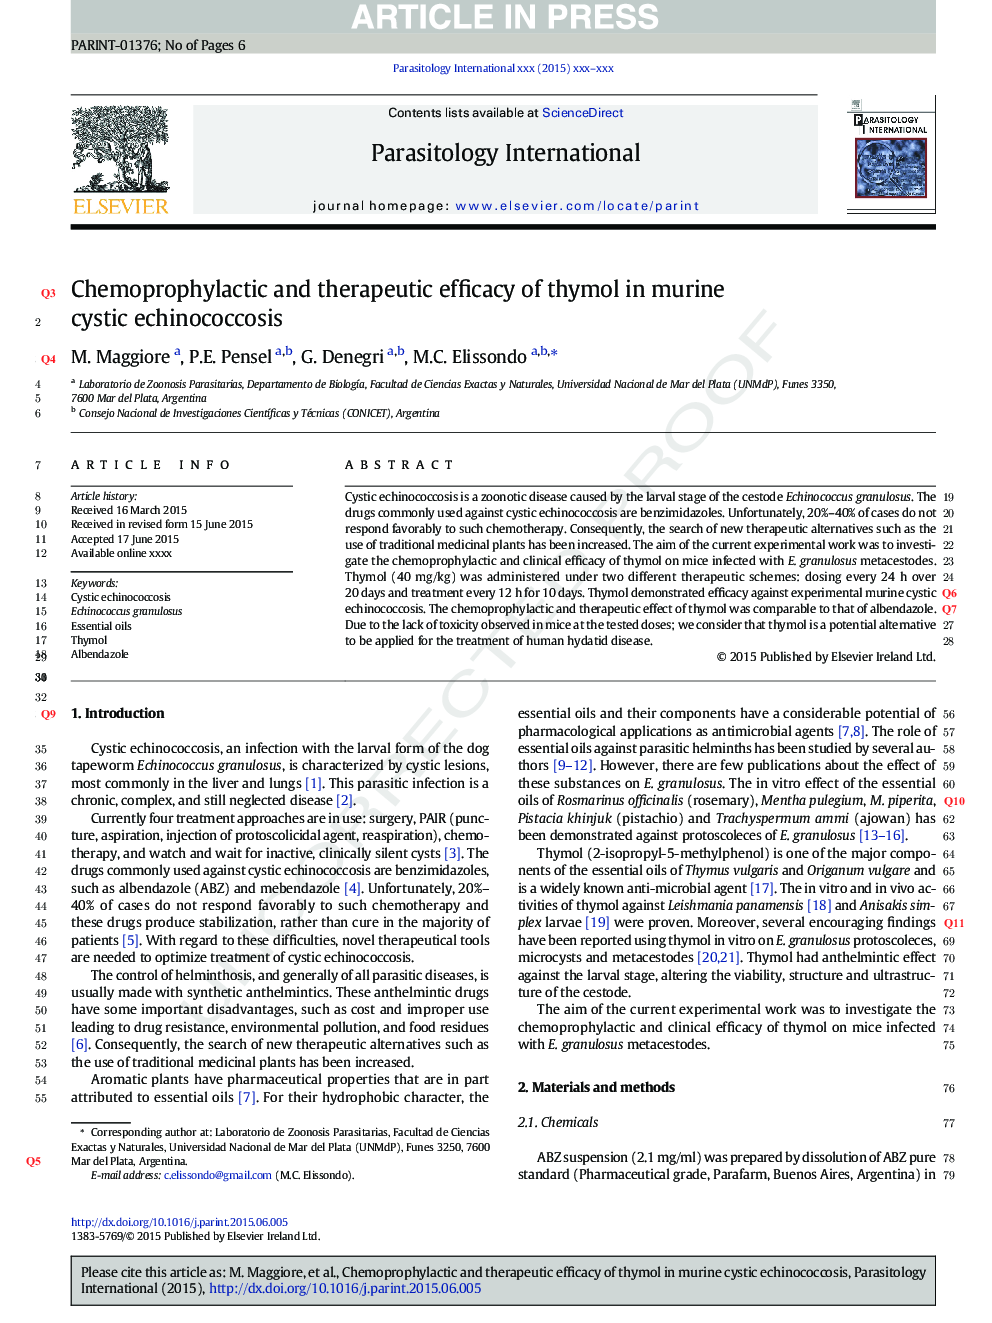 اثرات شیمی درمانی و درمانی تیمول در اکینوکوکوز کیستیک موش صحرایی 